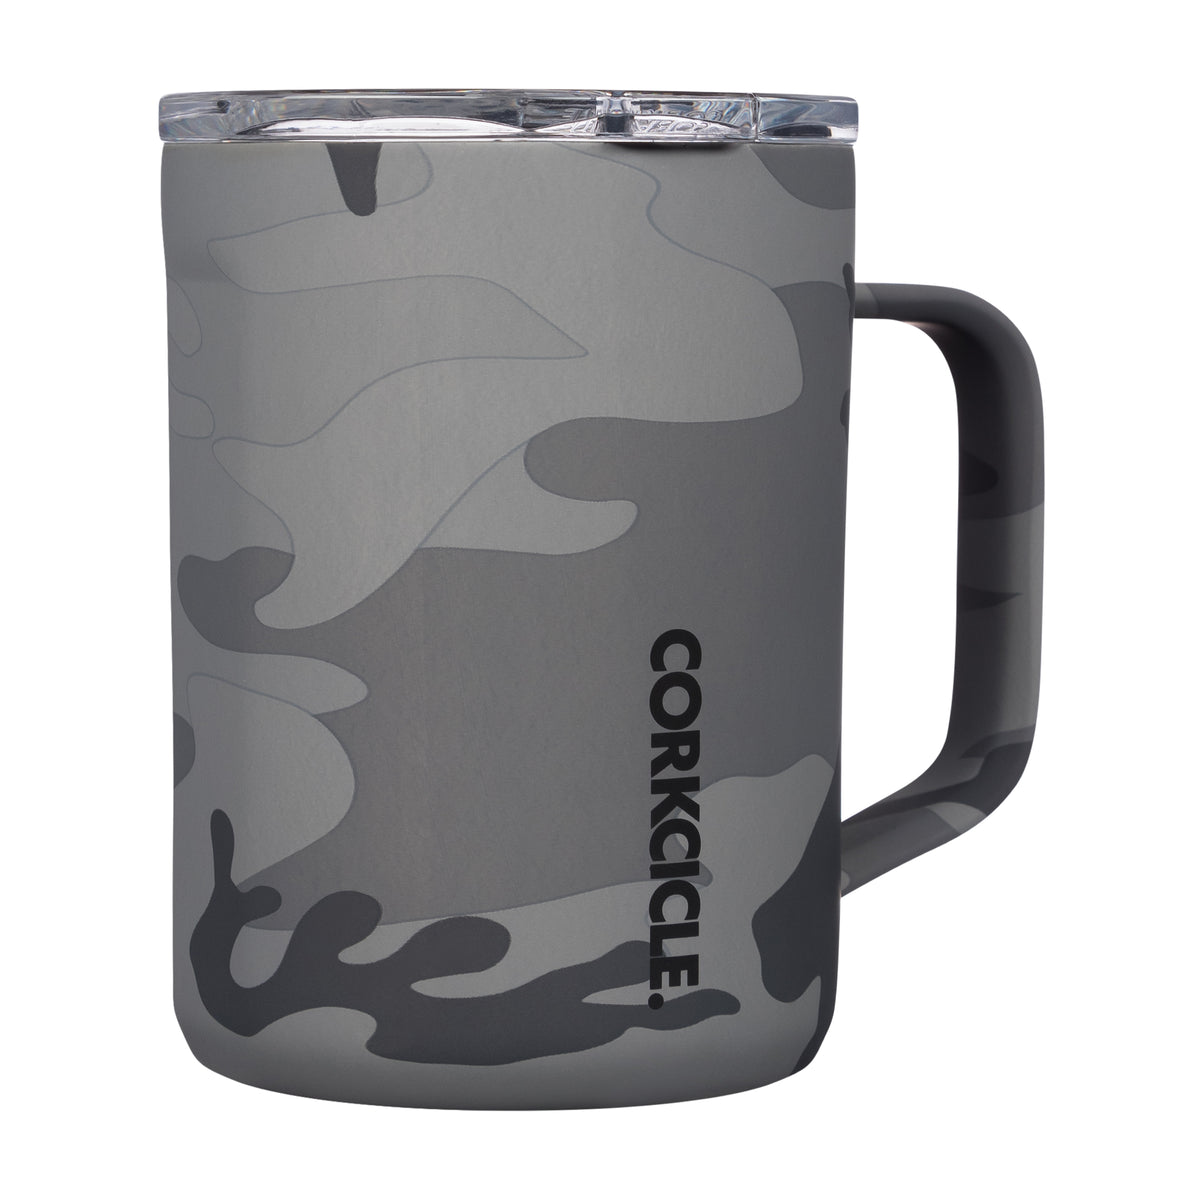 CORKCICLE - Mug Grey Camo 16 oz